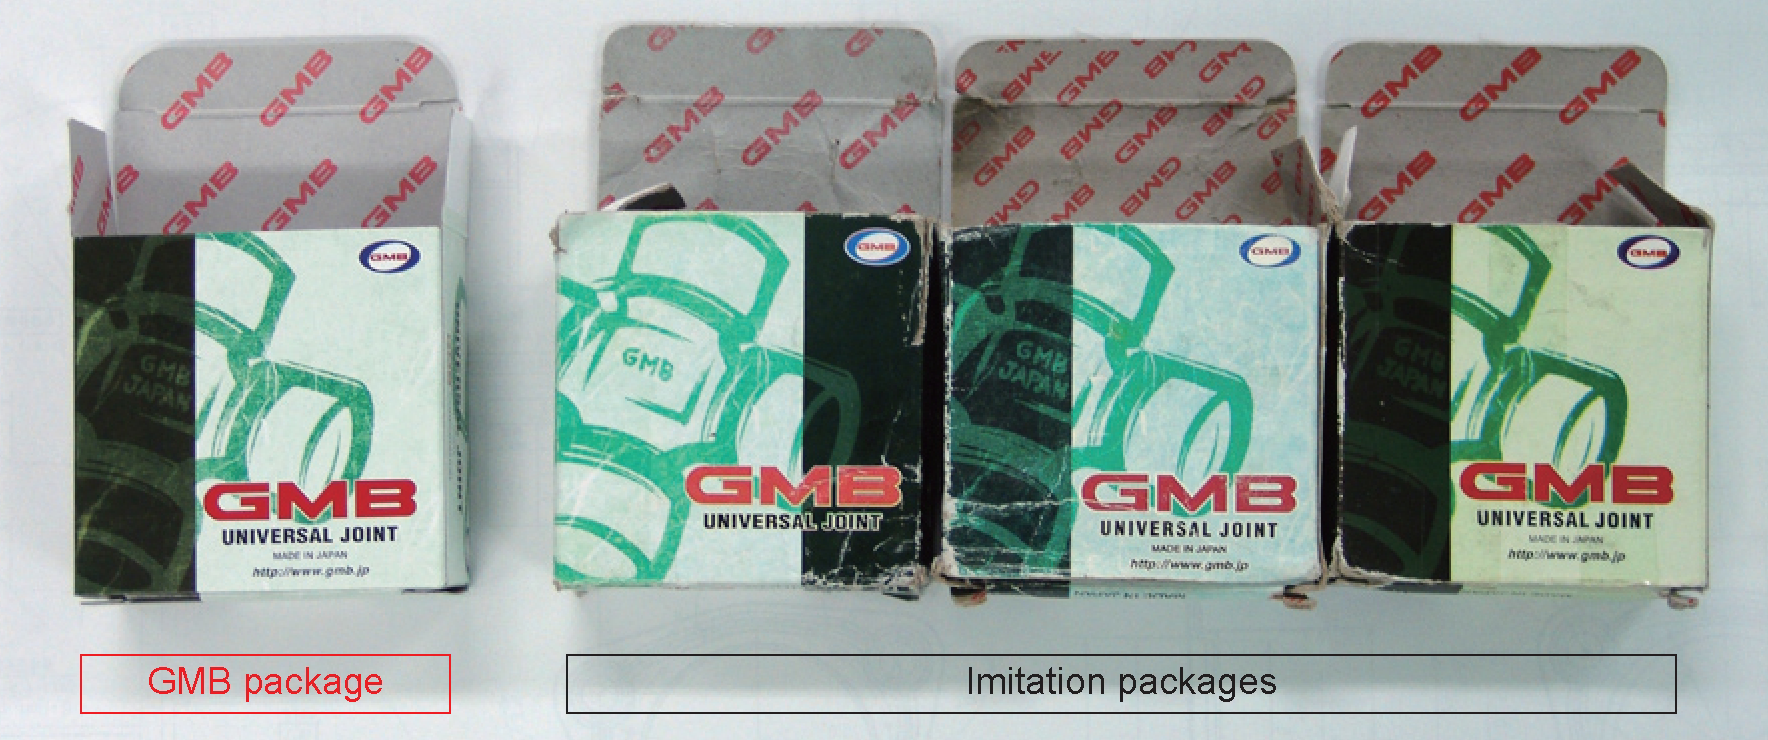 Сравнение оригинальной упаковки GMB и упаковок-подделок